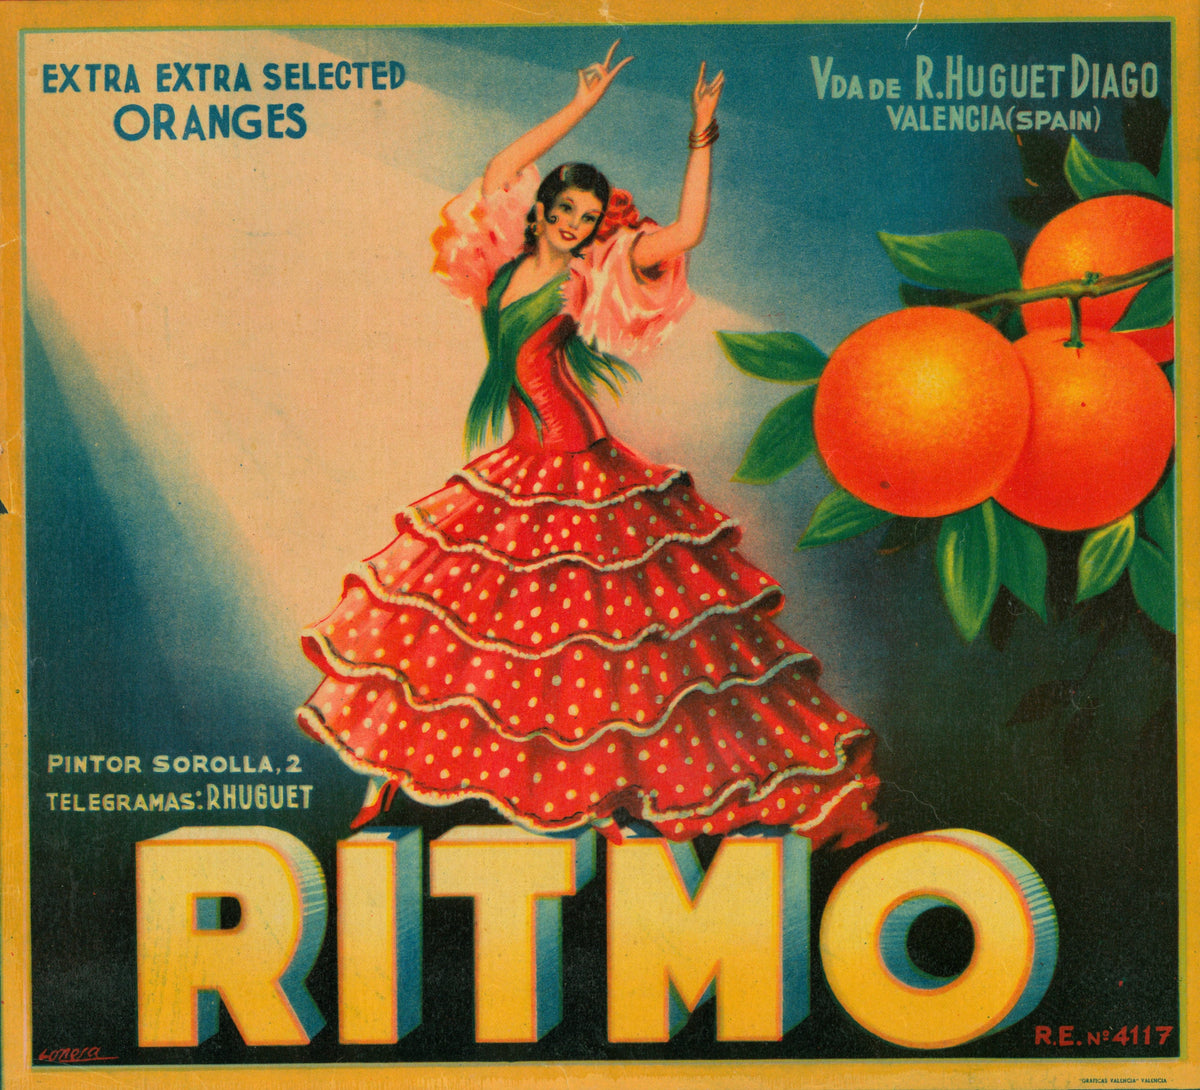 Ritmo- Spanish Crate Label - Authentic Vintage Antique Print